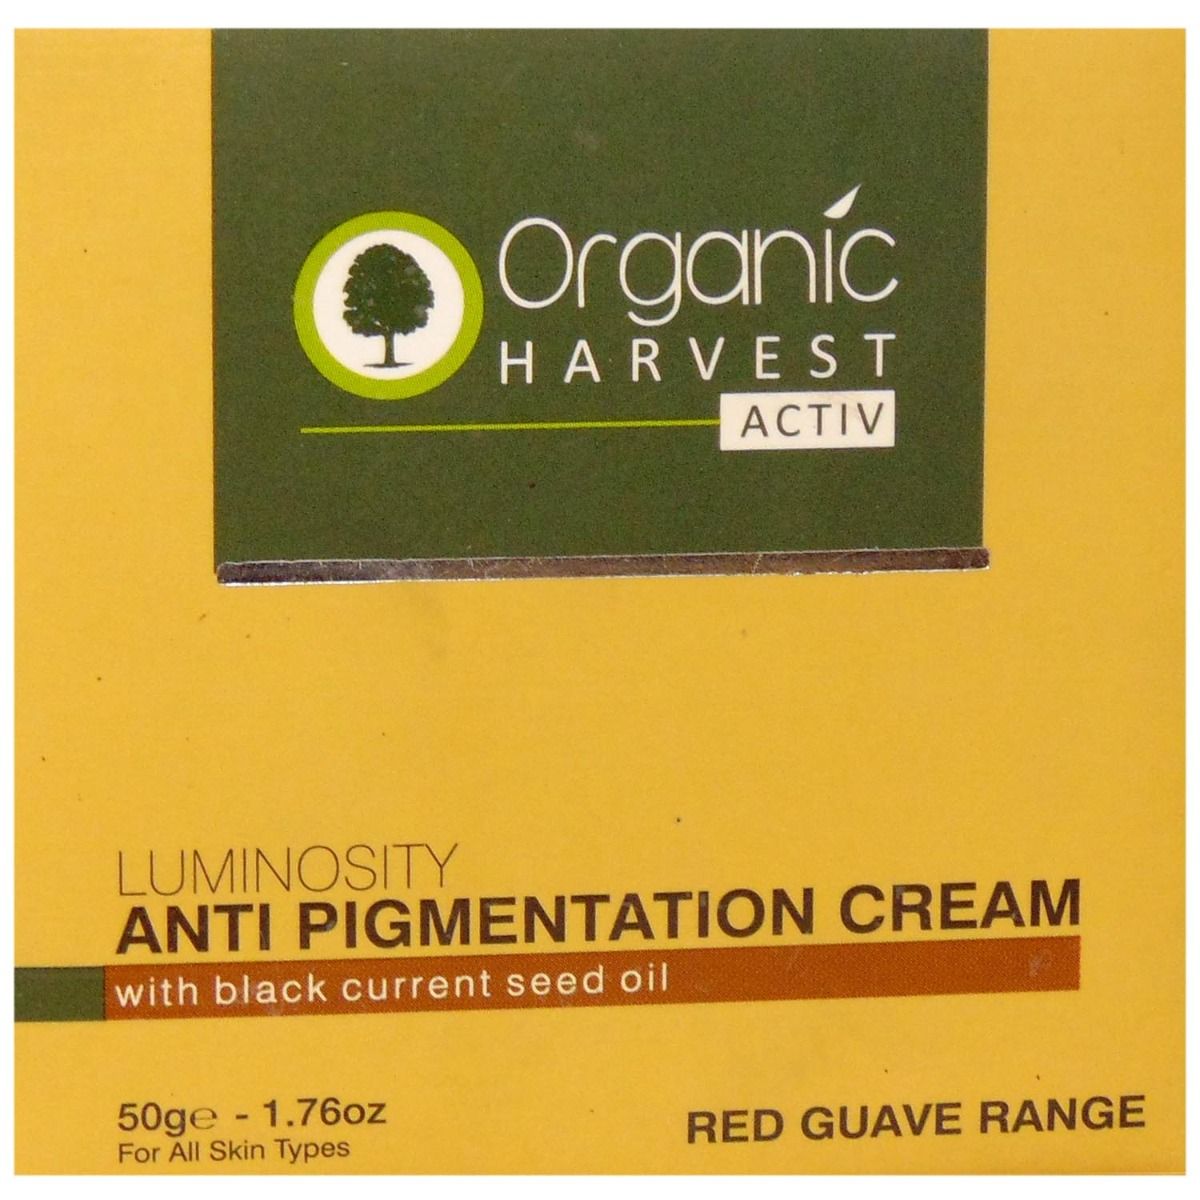 Organic Harvest Anti Pigmentation Cream, 50 gm, Pack of 1 